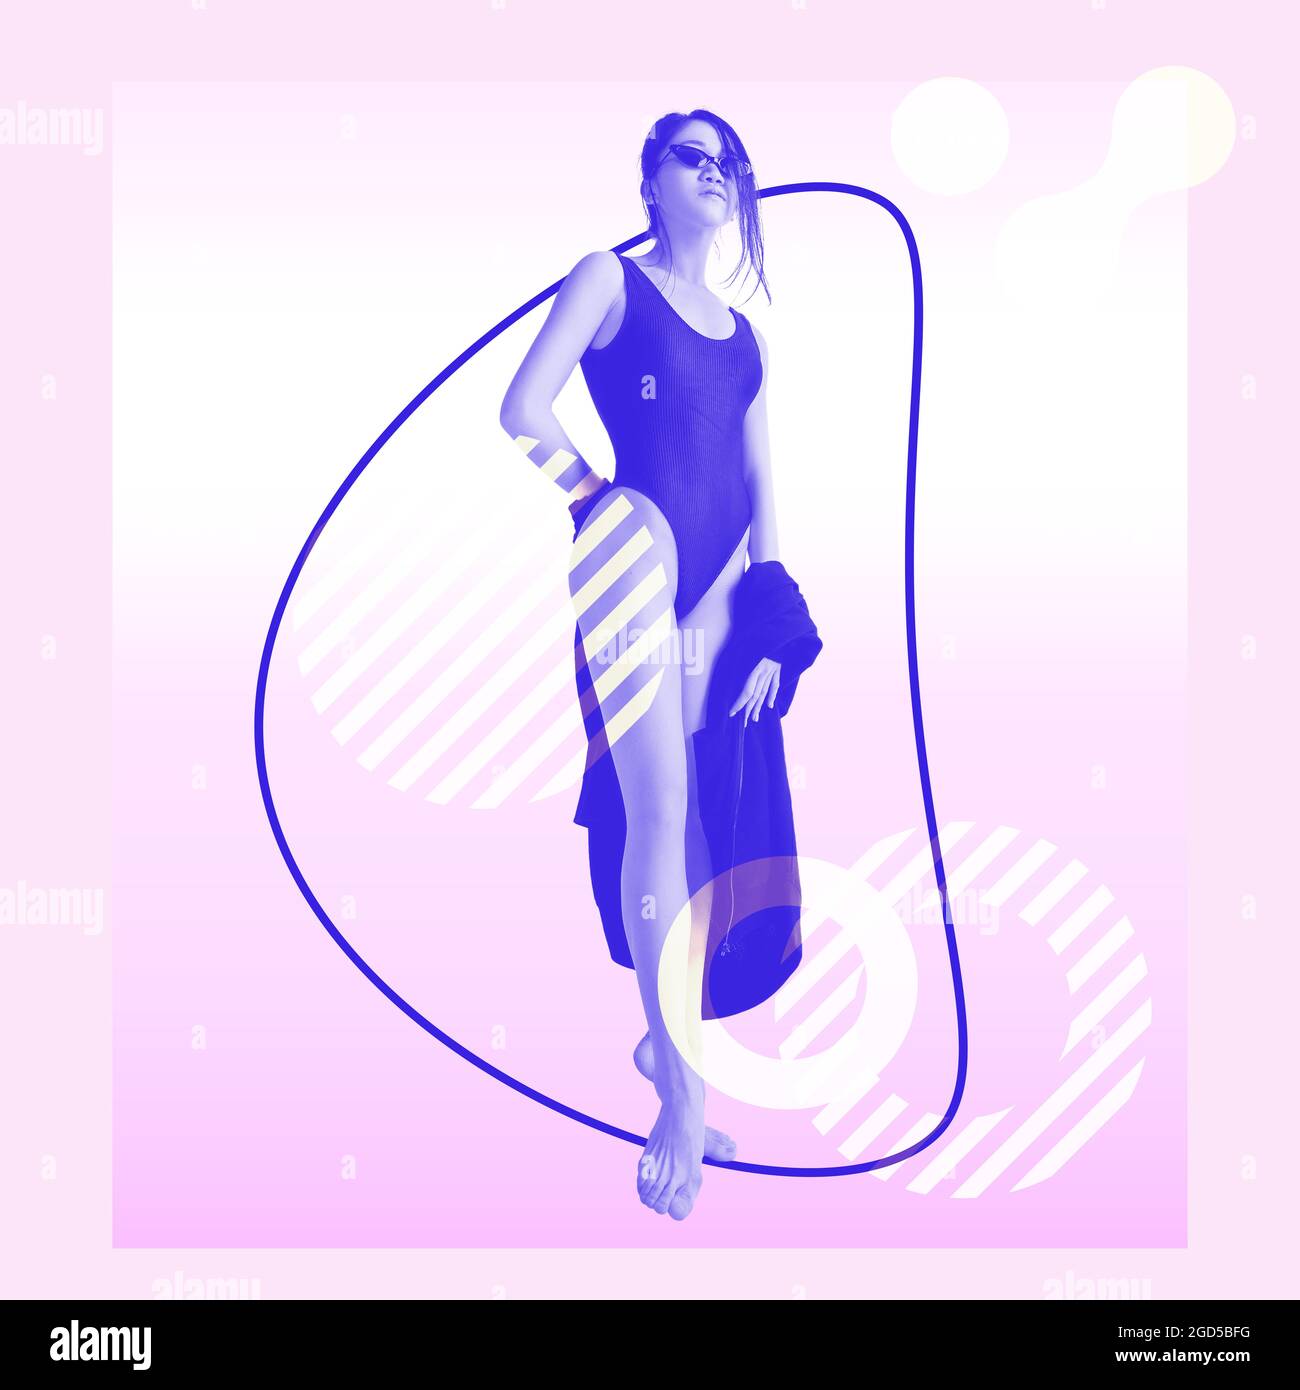 Affiche d'art contemporain. Jeune femme asiatique modèle en maillot de bain sur fond rose. Minimalisme funky. Banque D'Images